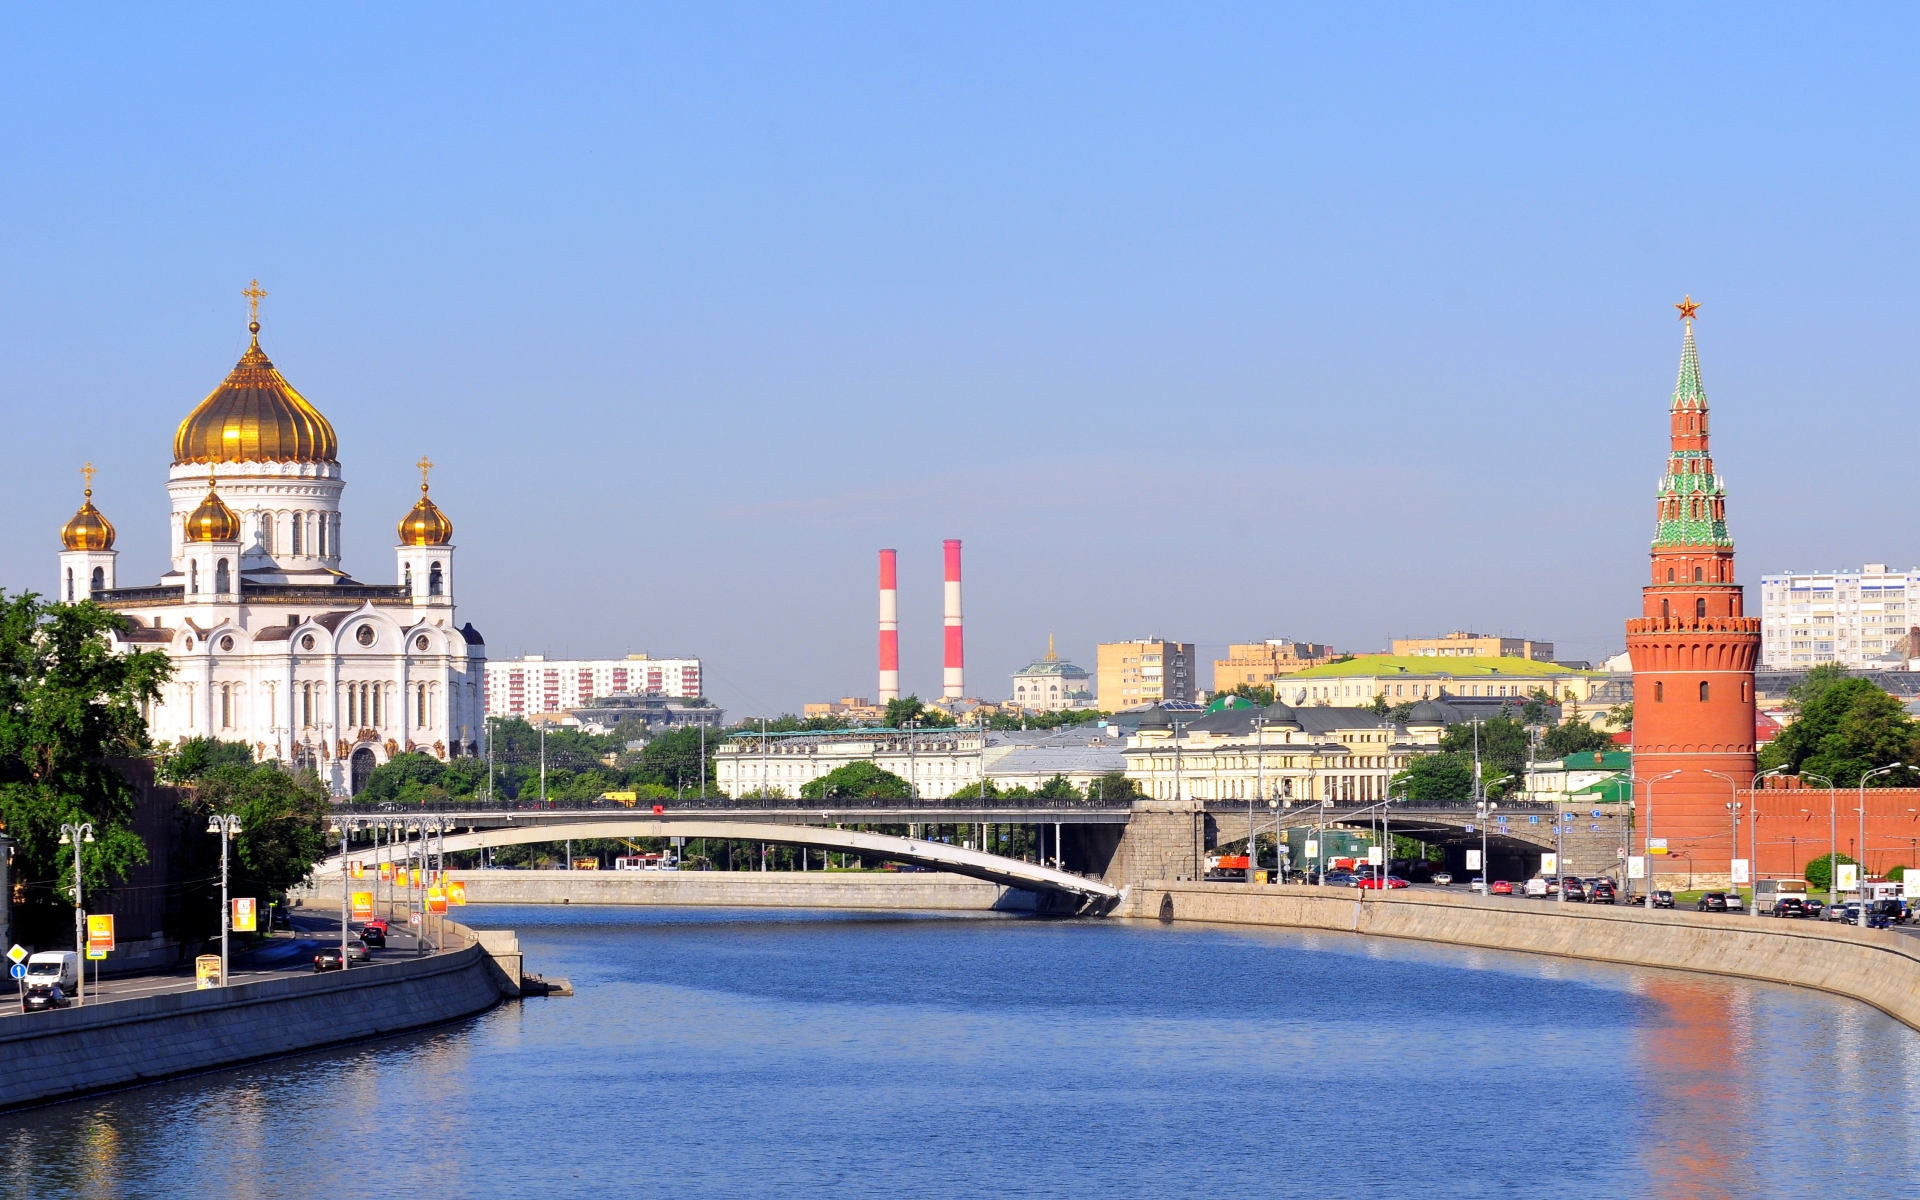 московский кремль фото вид с реки